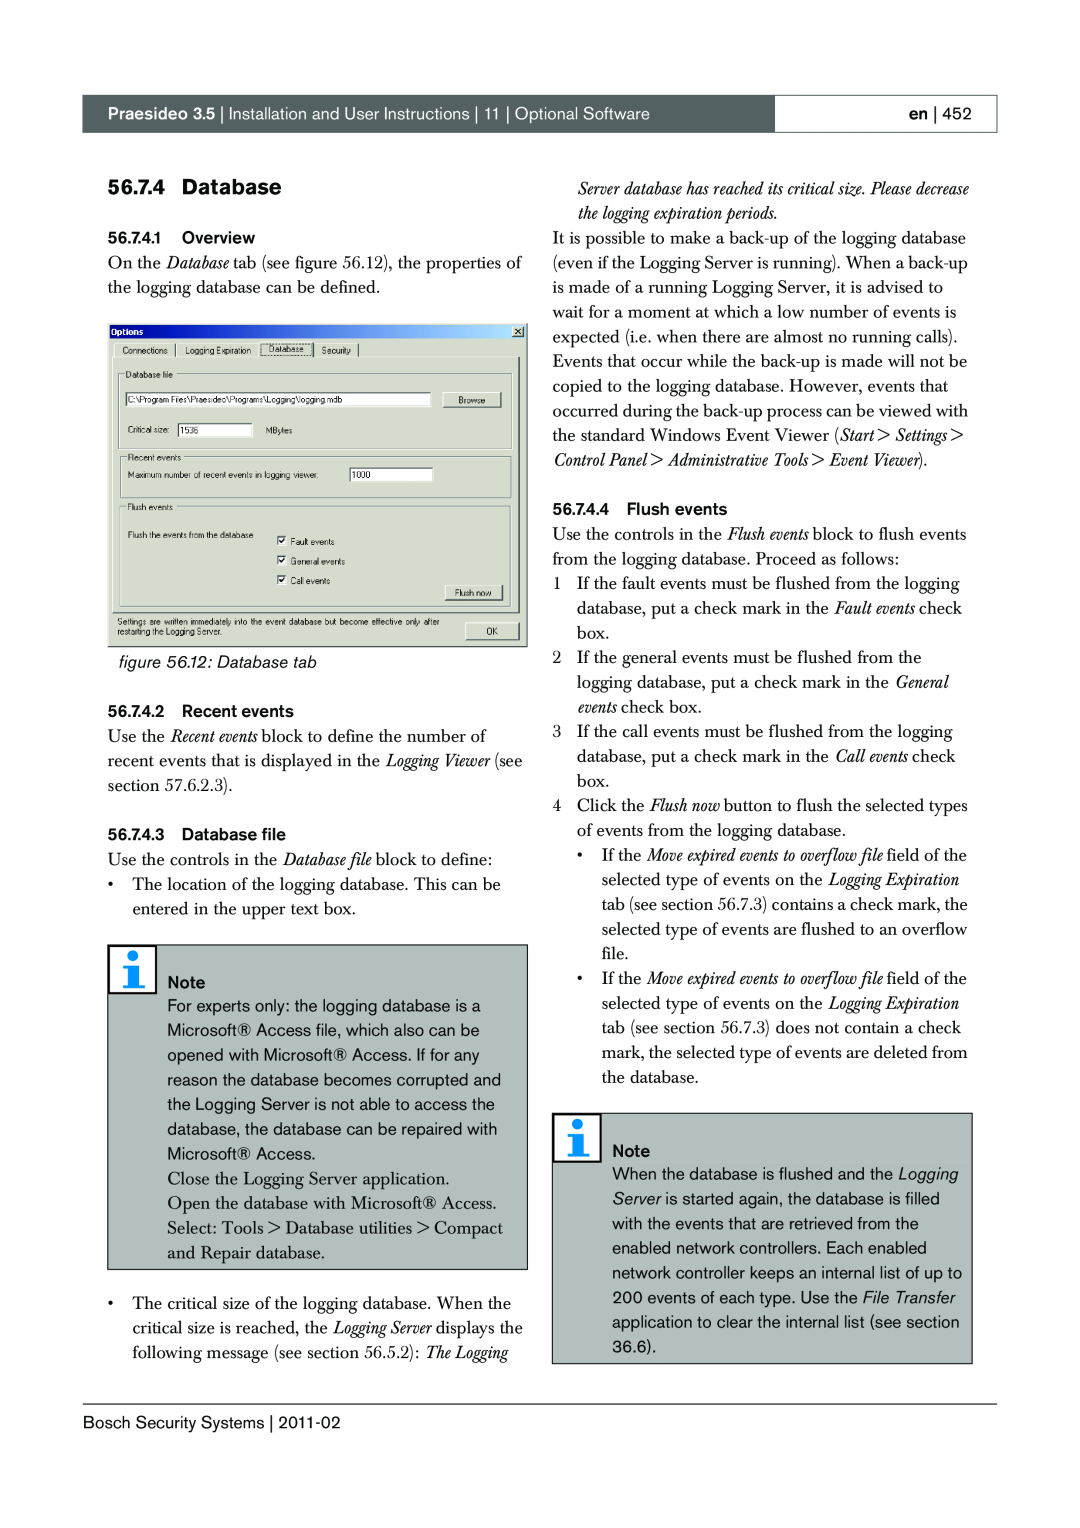 Bosch Appliances 3.5 manual 12: Database tab 